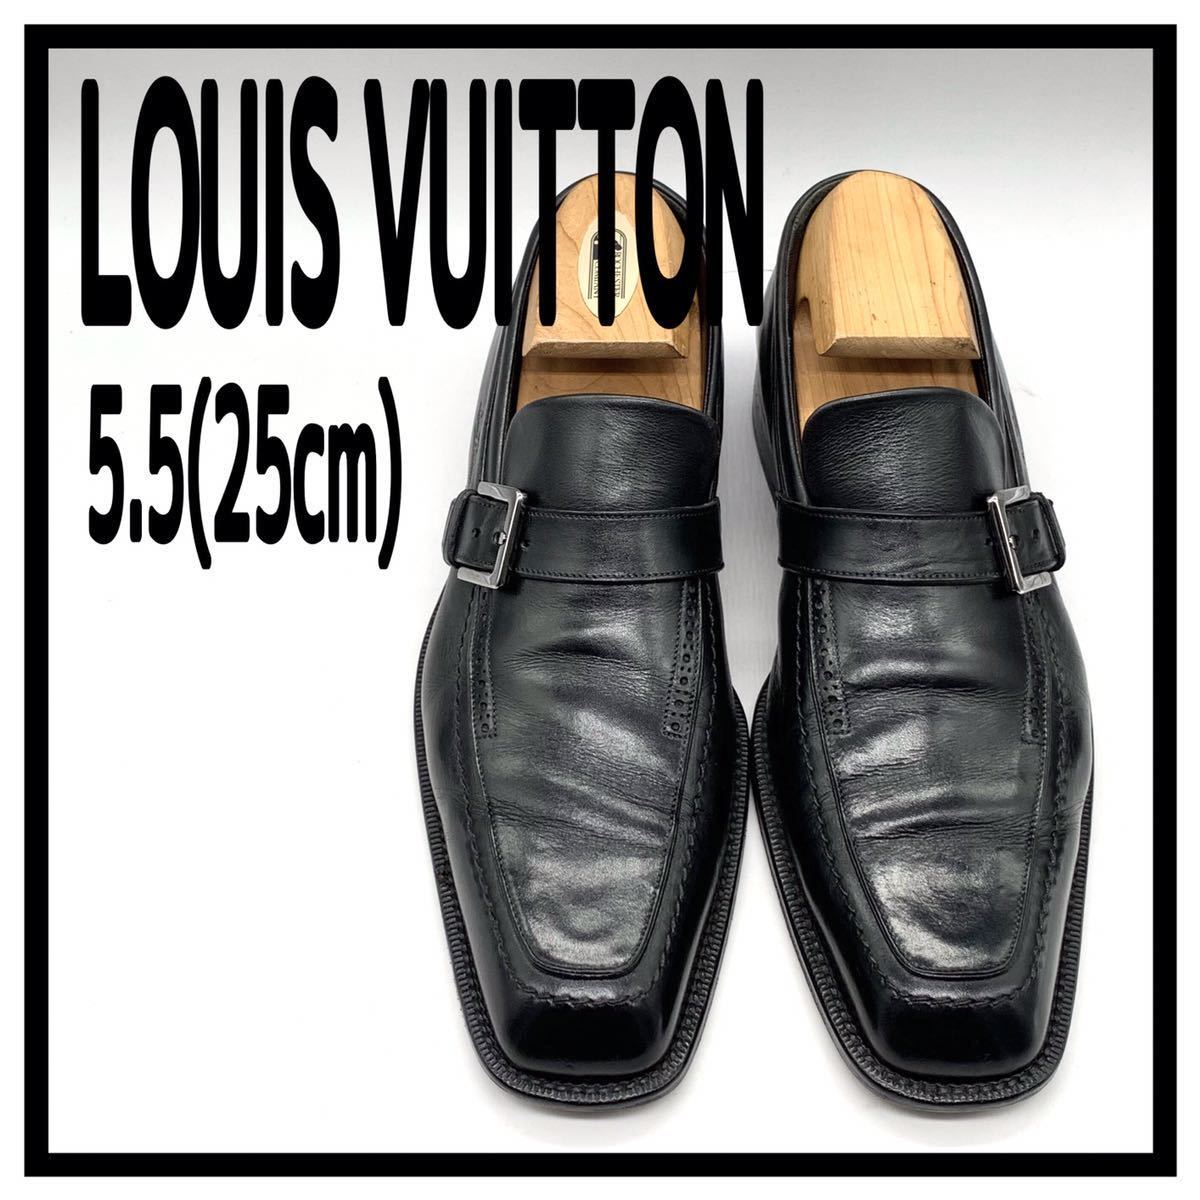 LOUIS VUITTON (ルイヴィトン) スクエアトゥ ローファー スリッポン ビジネス レザー ブラック 黒 5.5 25cm 革靴 シューズ イタリア製